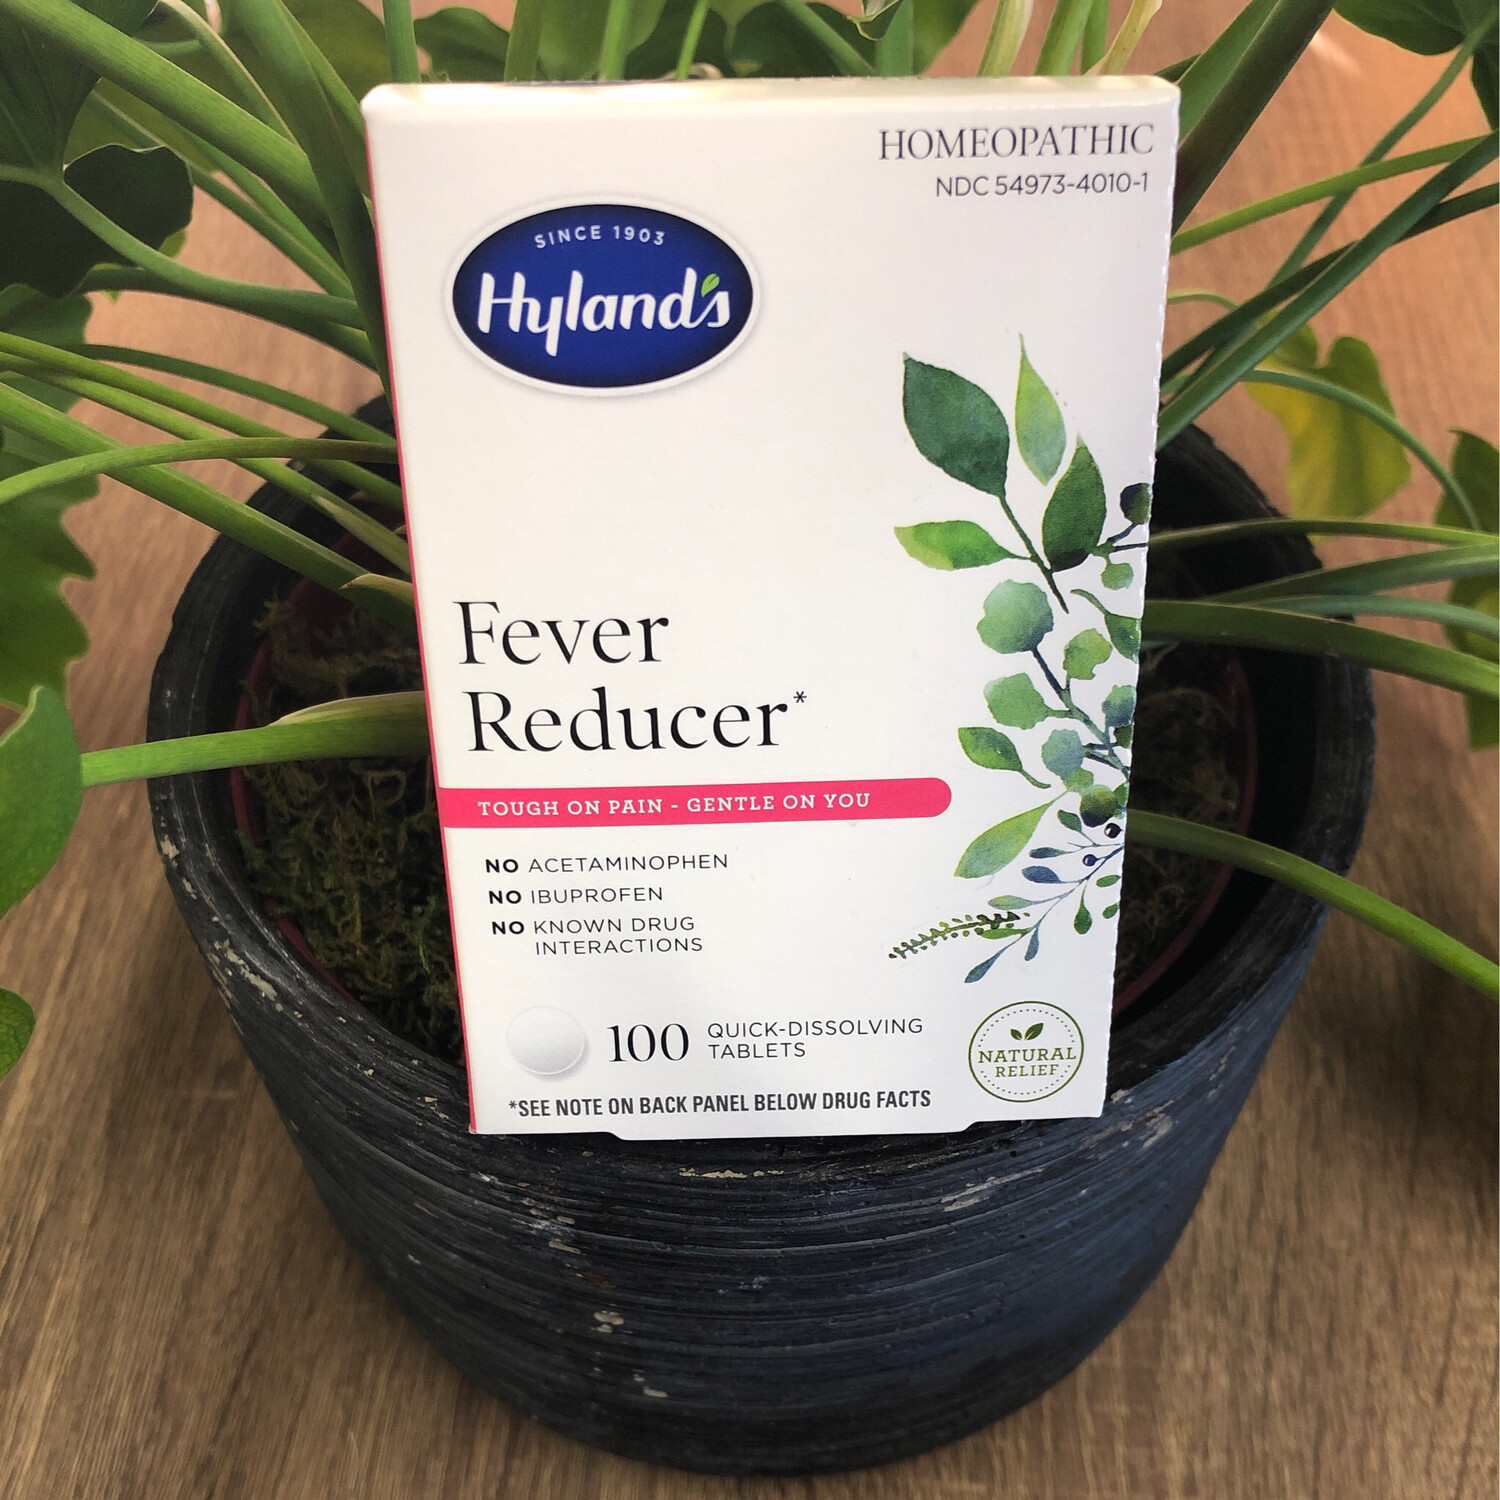 Fever Reducer